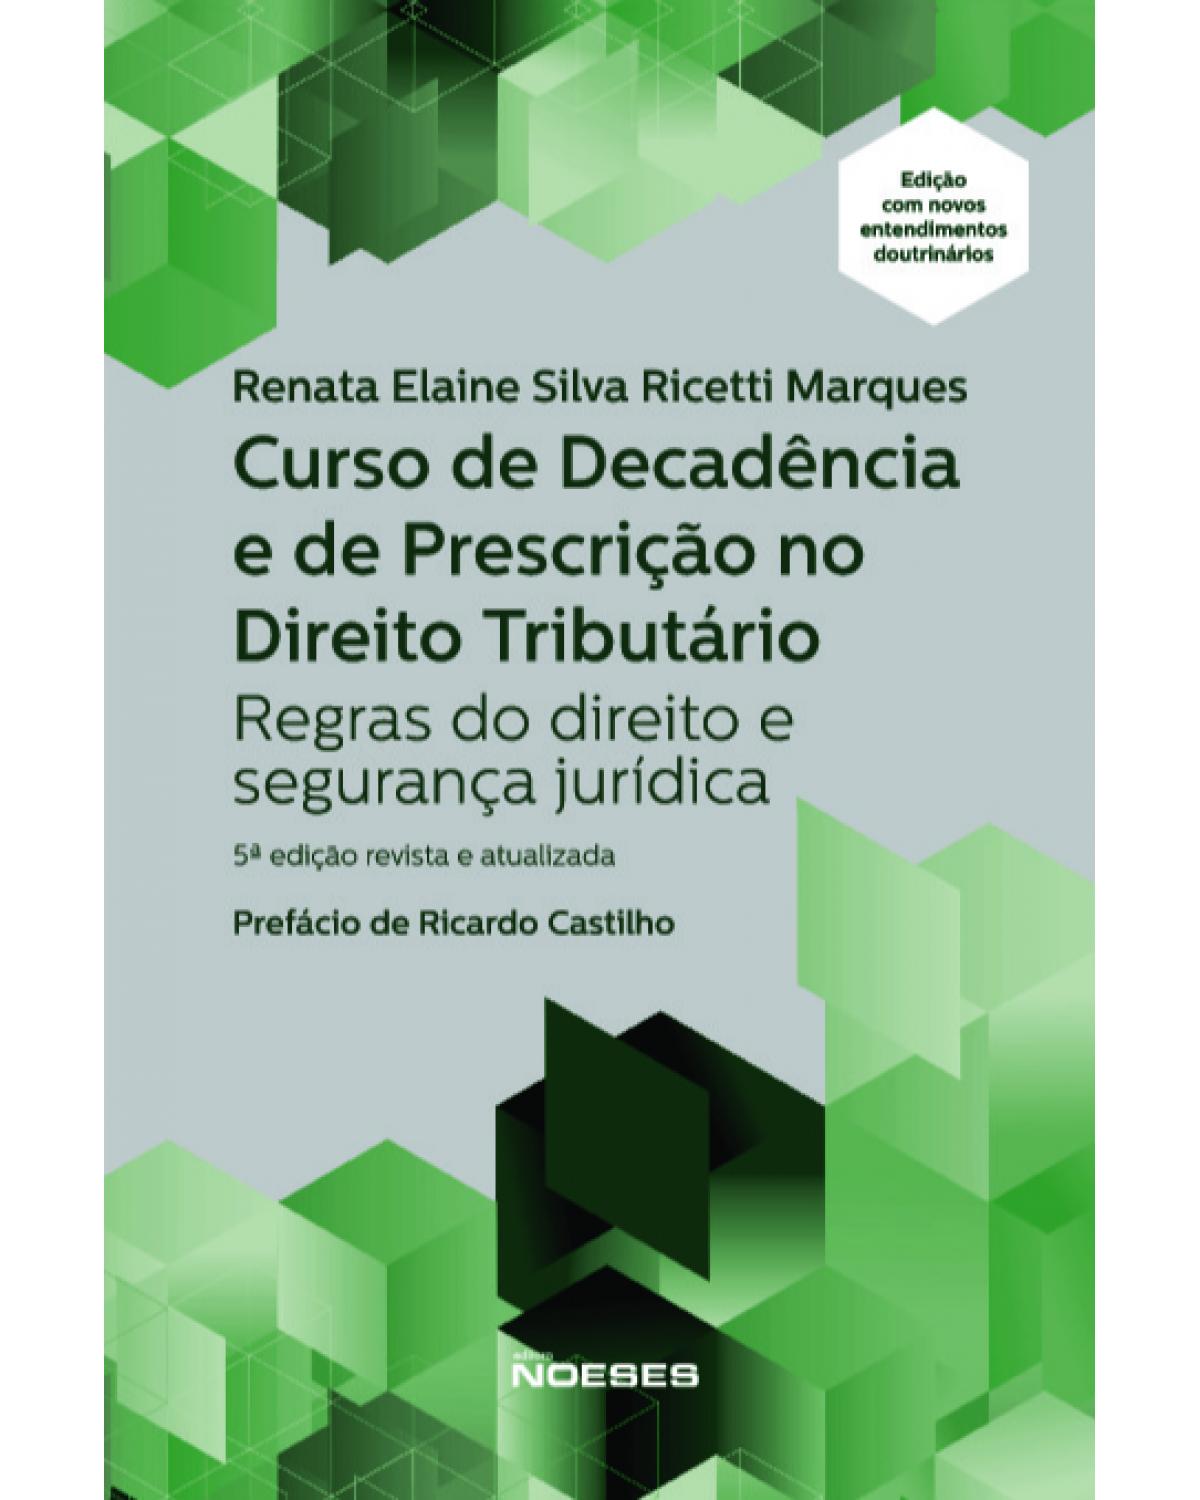 Curso de decadência e de prescrição no direito tributário - regras do direito e segurança jurídica - 5ª Edição | 2021